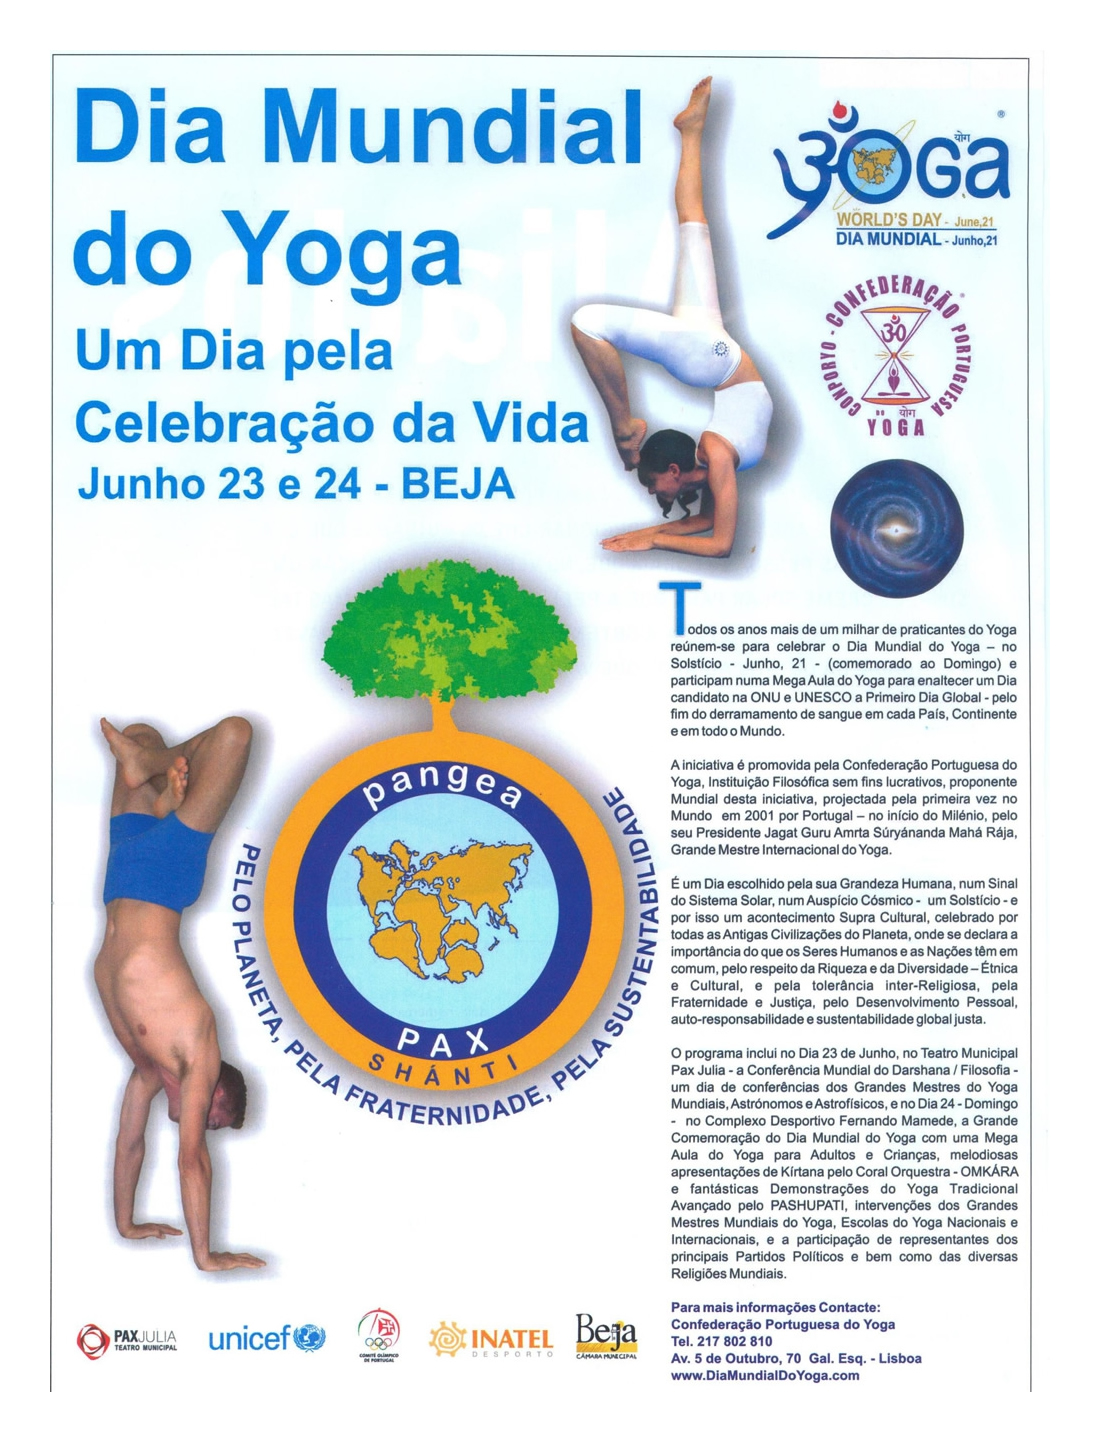 Imprensa - Dia Mundial do yoga 2012